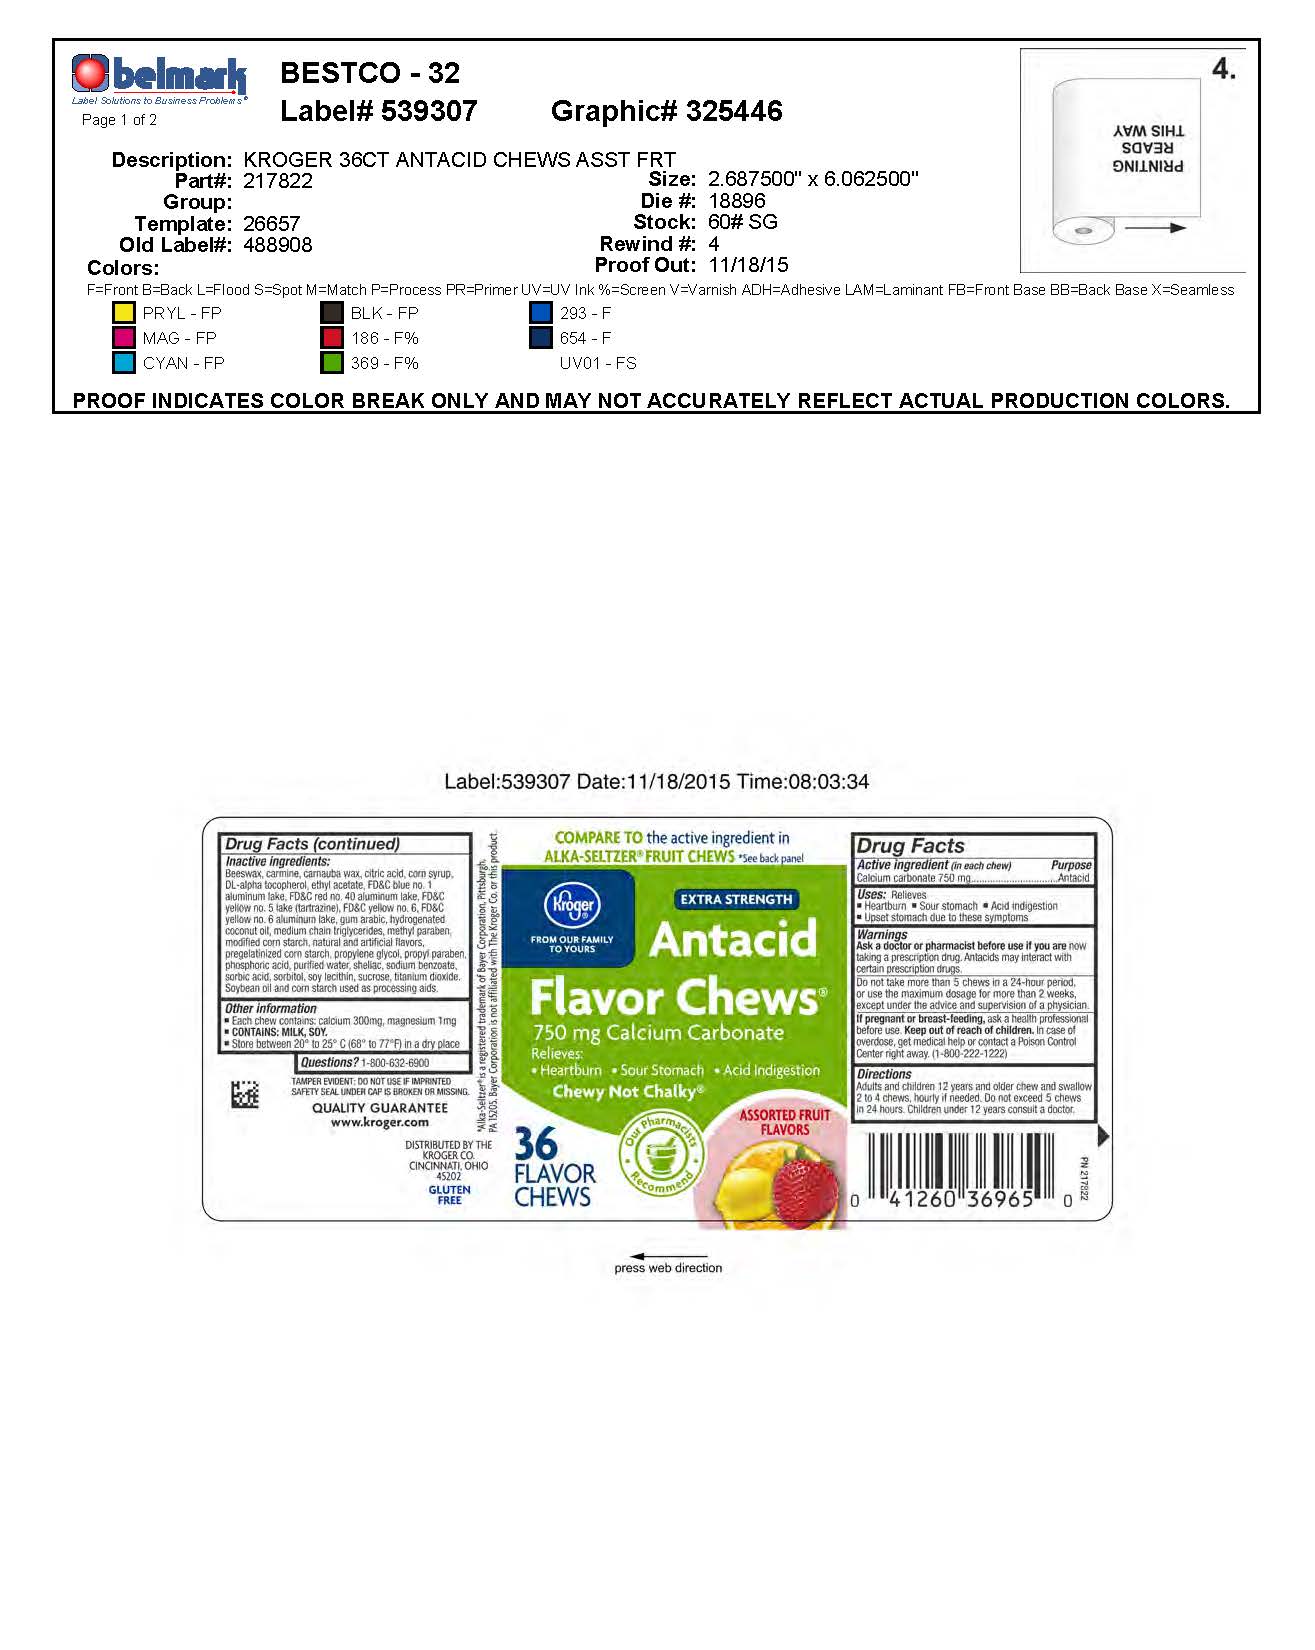 Kroger Asst Fruit Flavor Chews